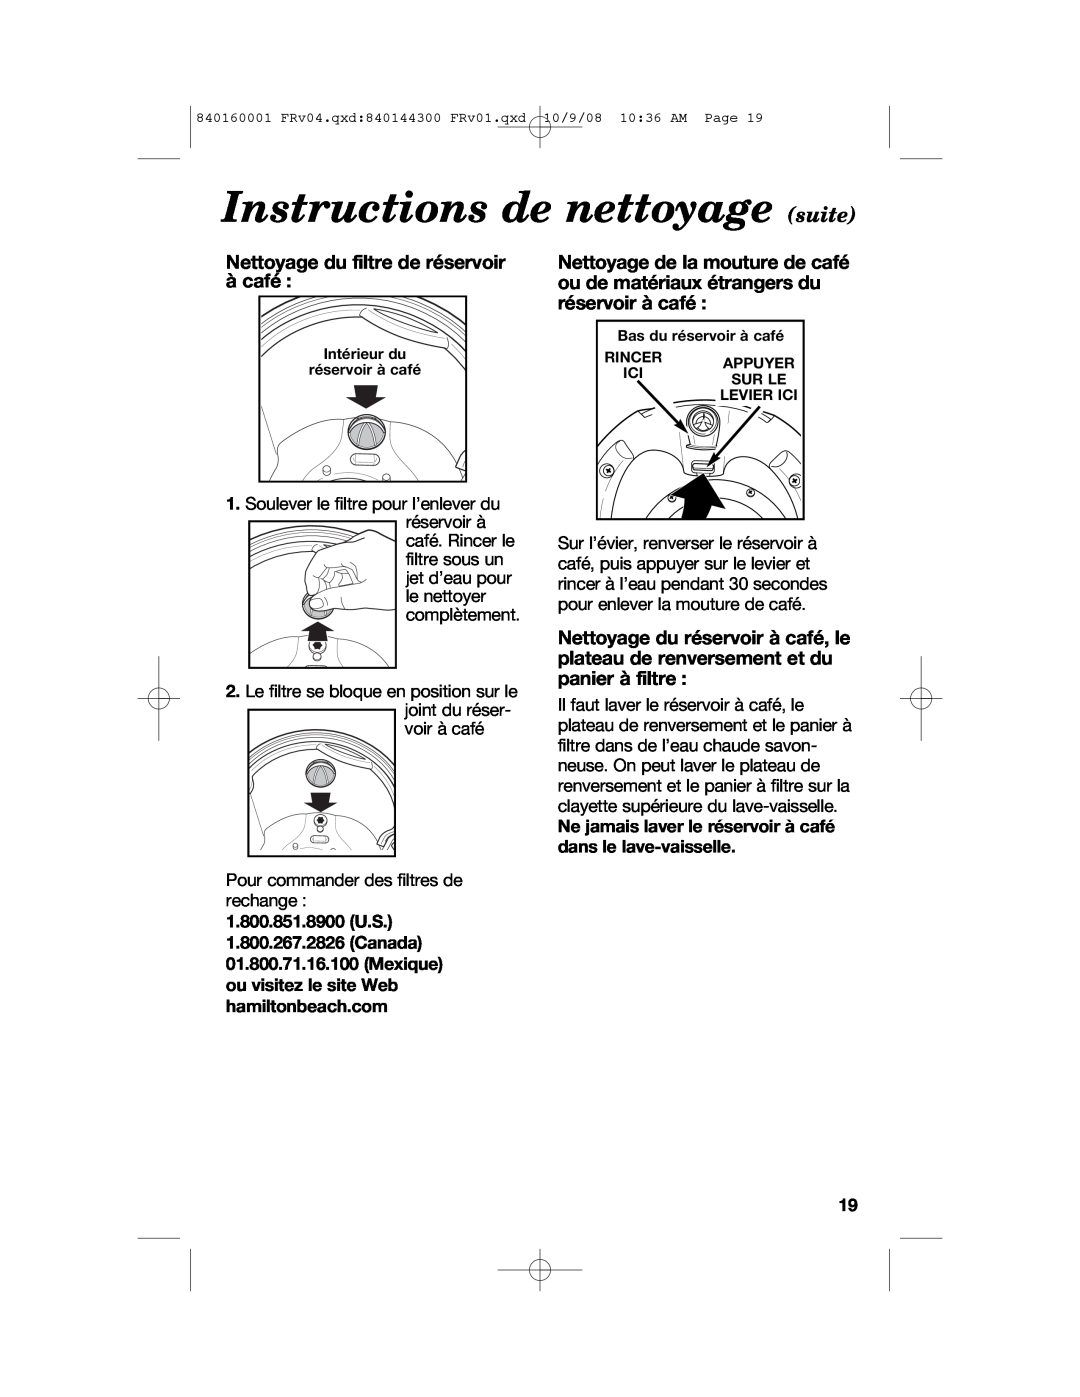 Hamilton Beach 47214 manual Instructions de nettoyage suite 